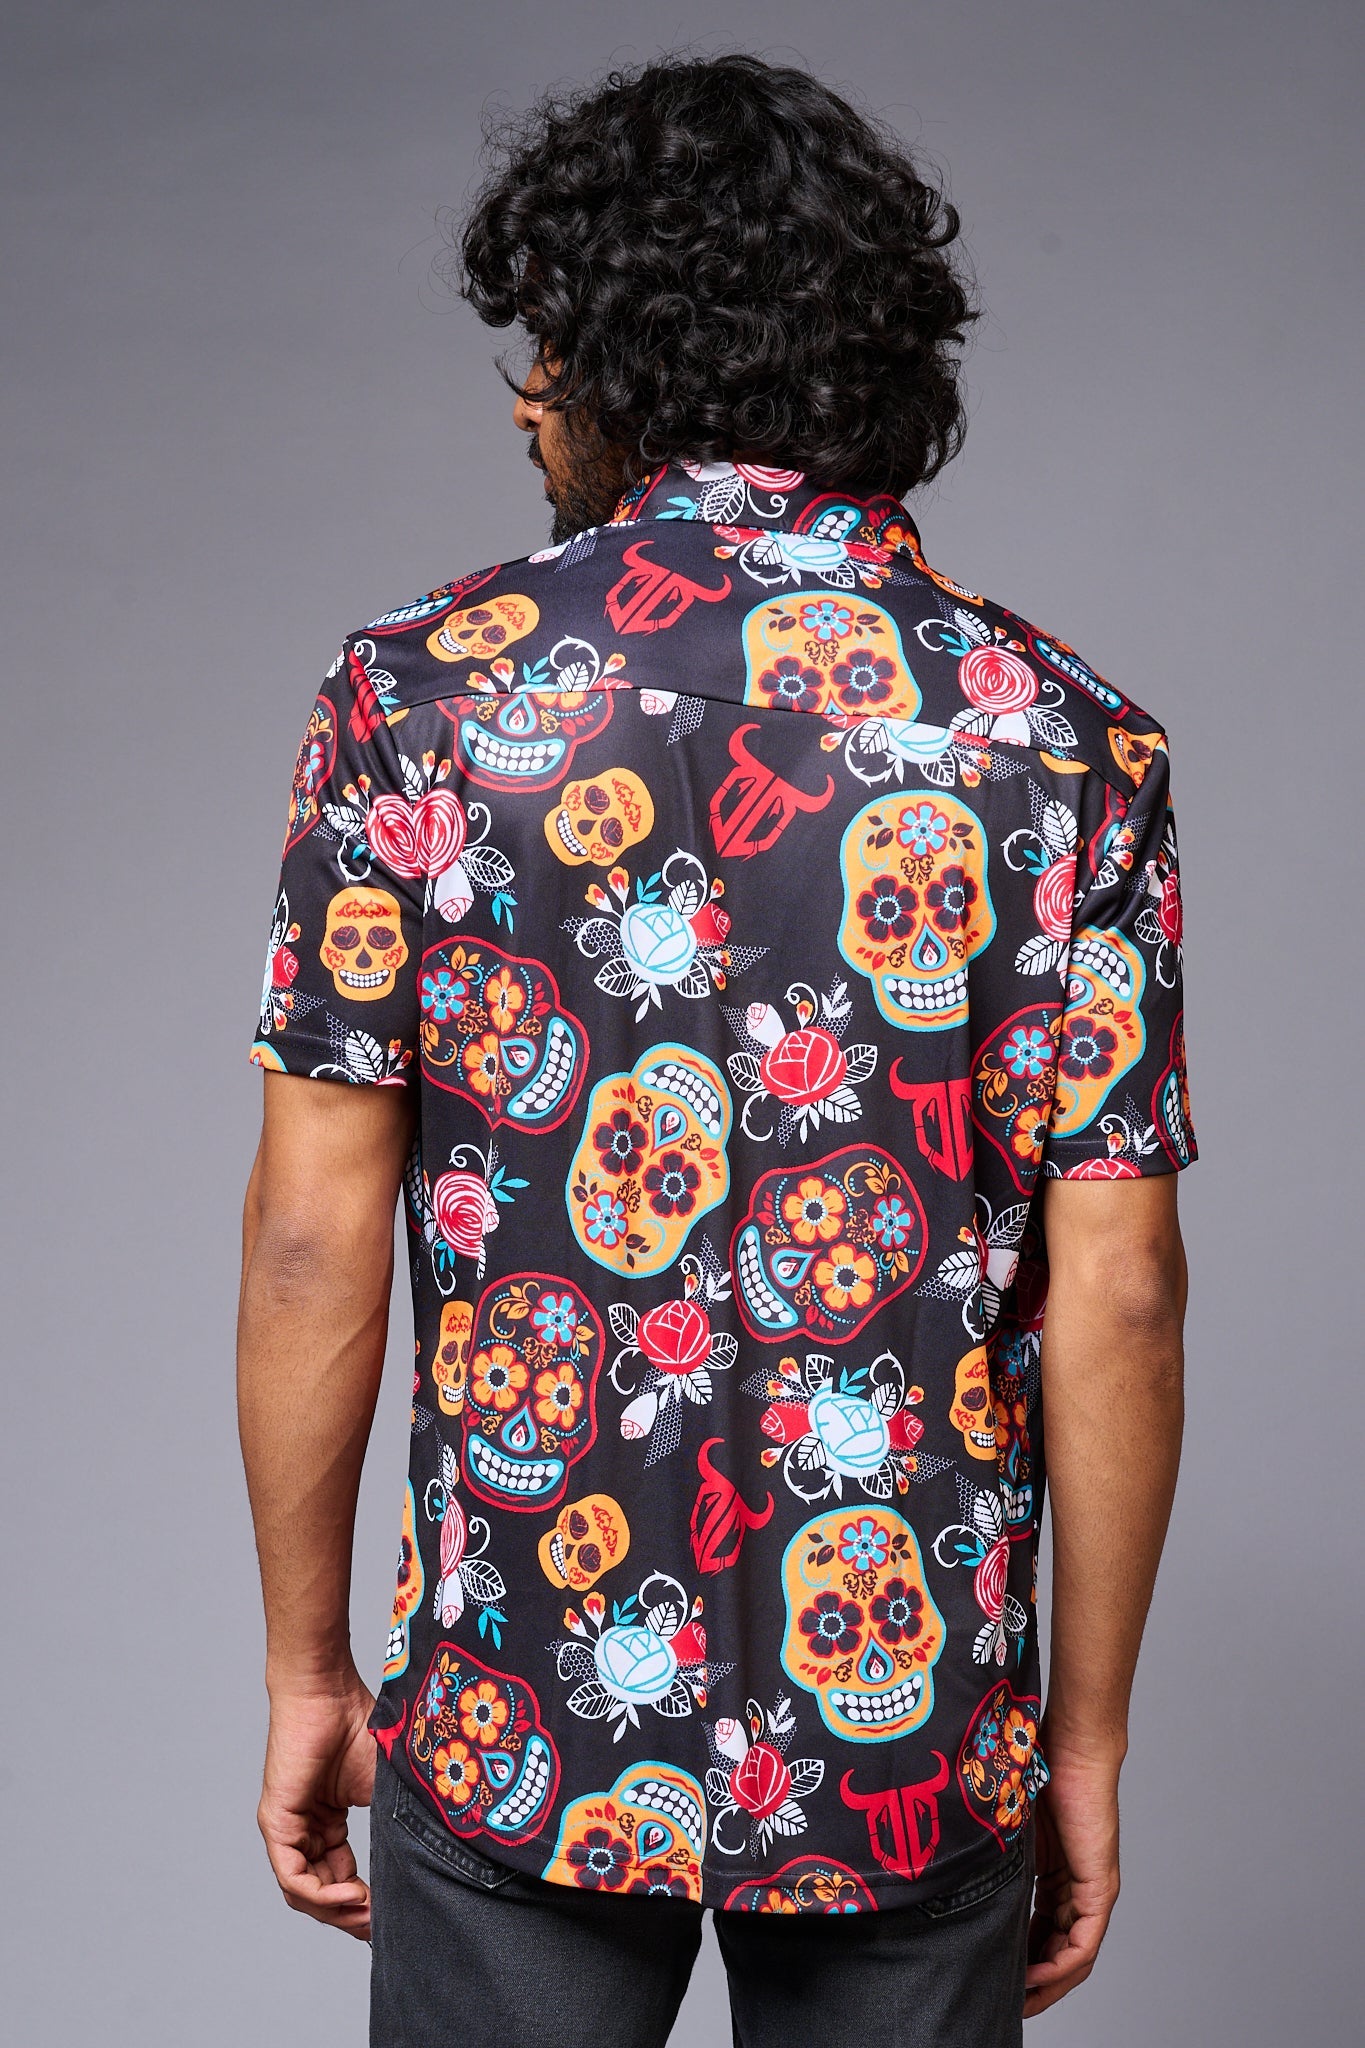 Colourful Skull Printed Black Shirt for Men - Go Devil